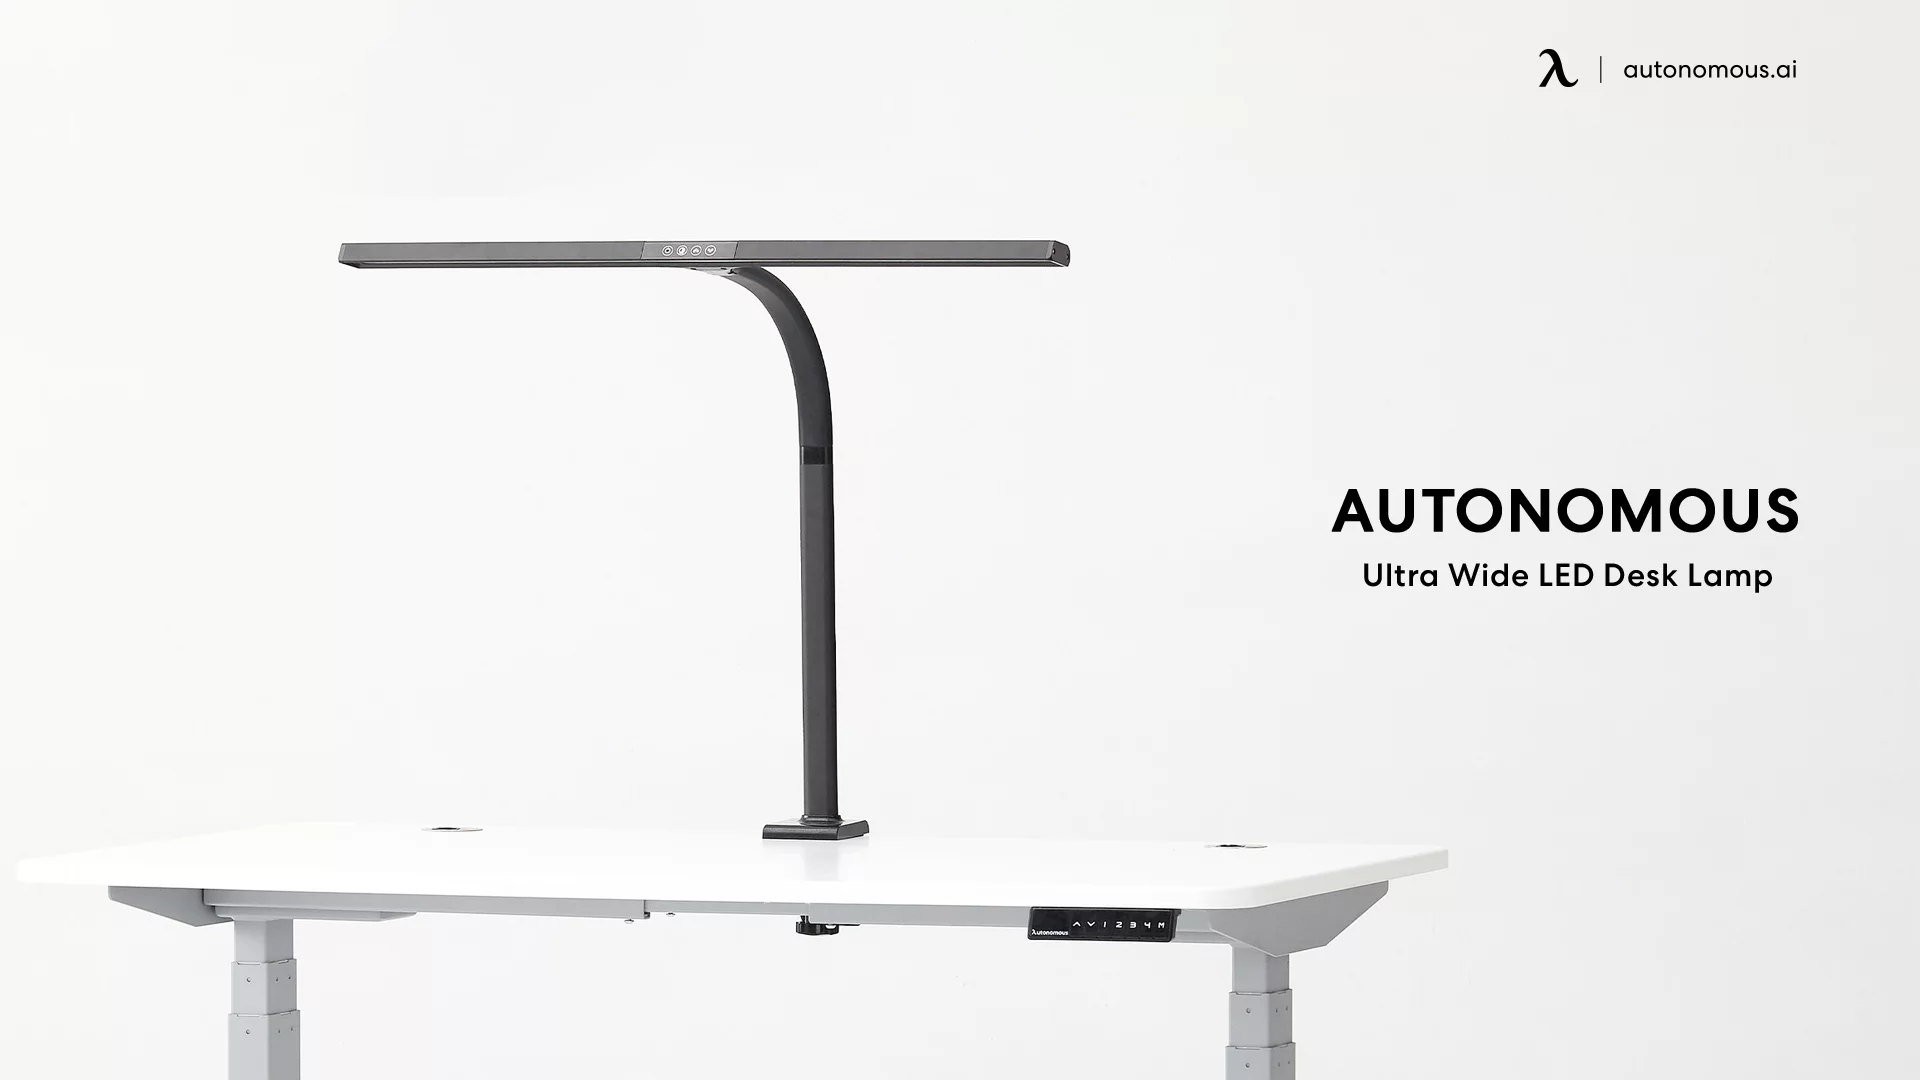 Ultra-Wide LED Desk Lamp by Autonomous